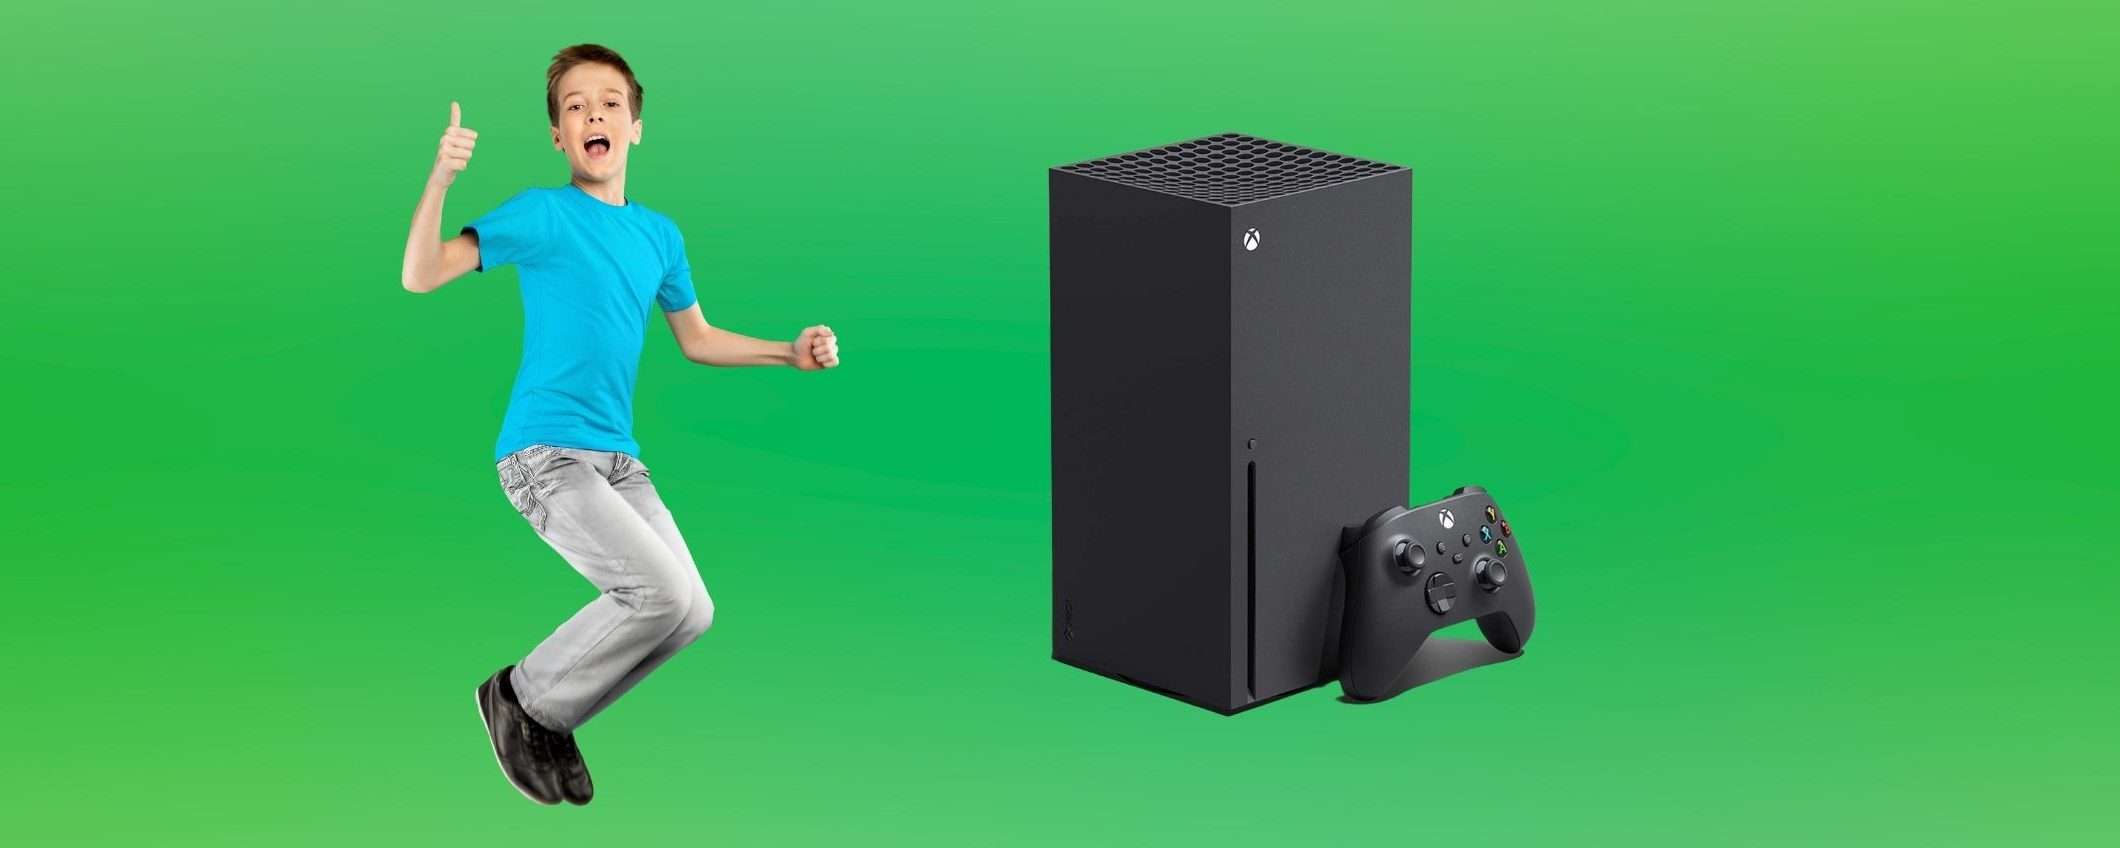 Xbox Series X: a soli 399€ è un regalo di Natale inaspettato da parte di Amazon